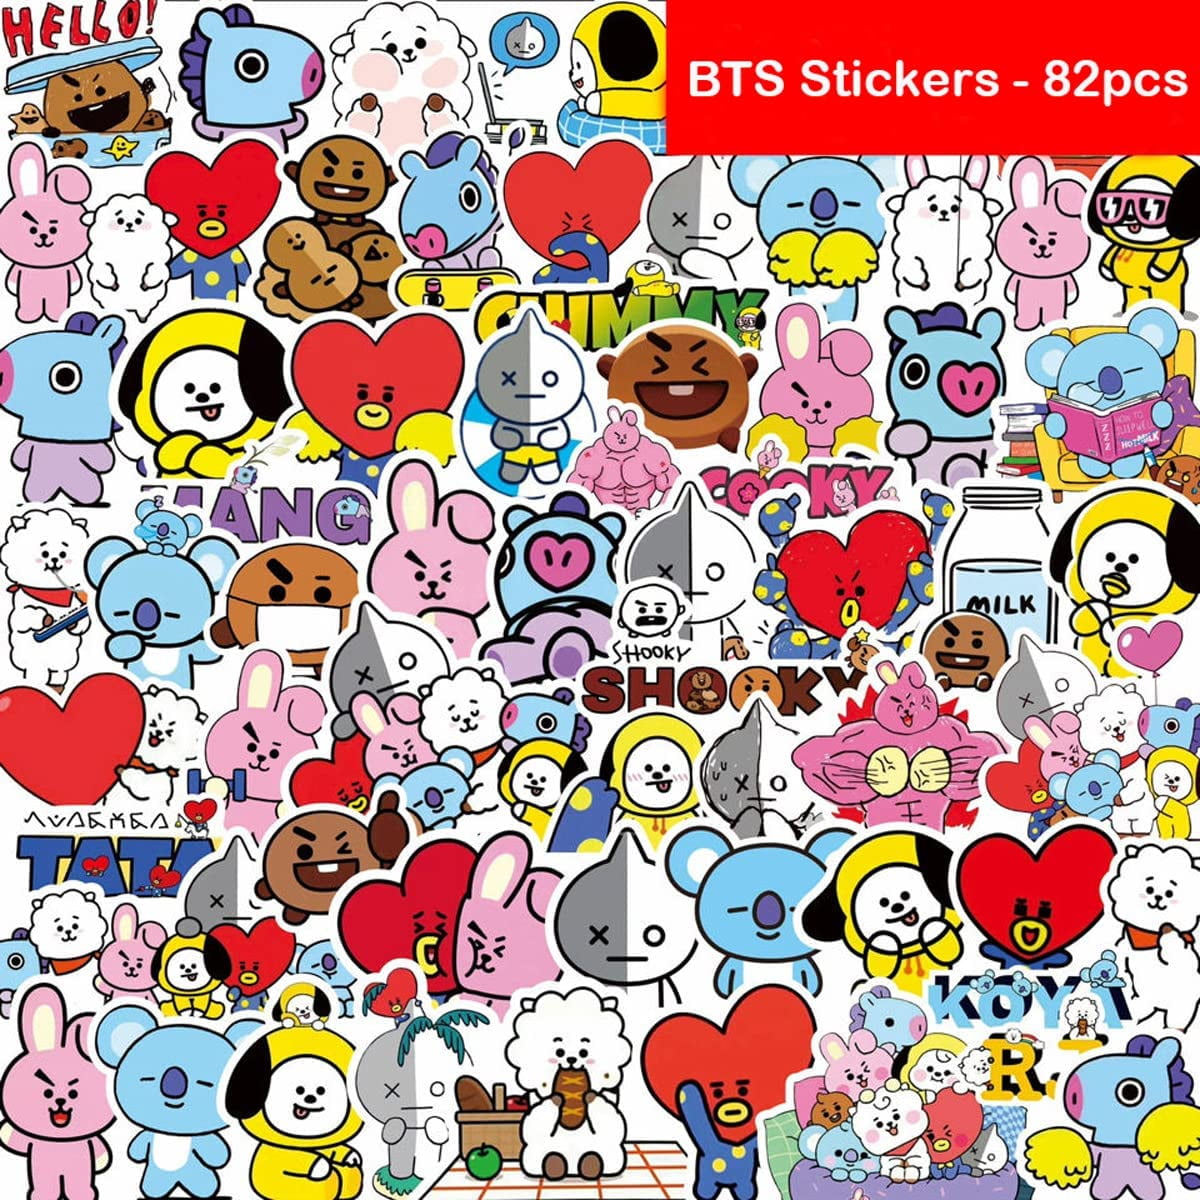 BTS stickers pack – StickersMag